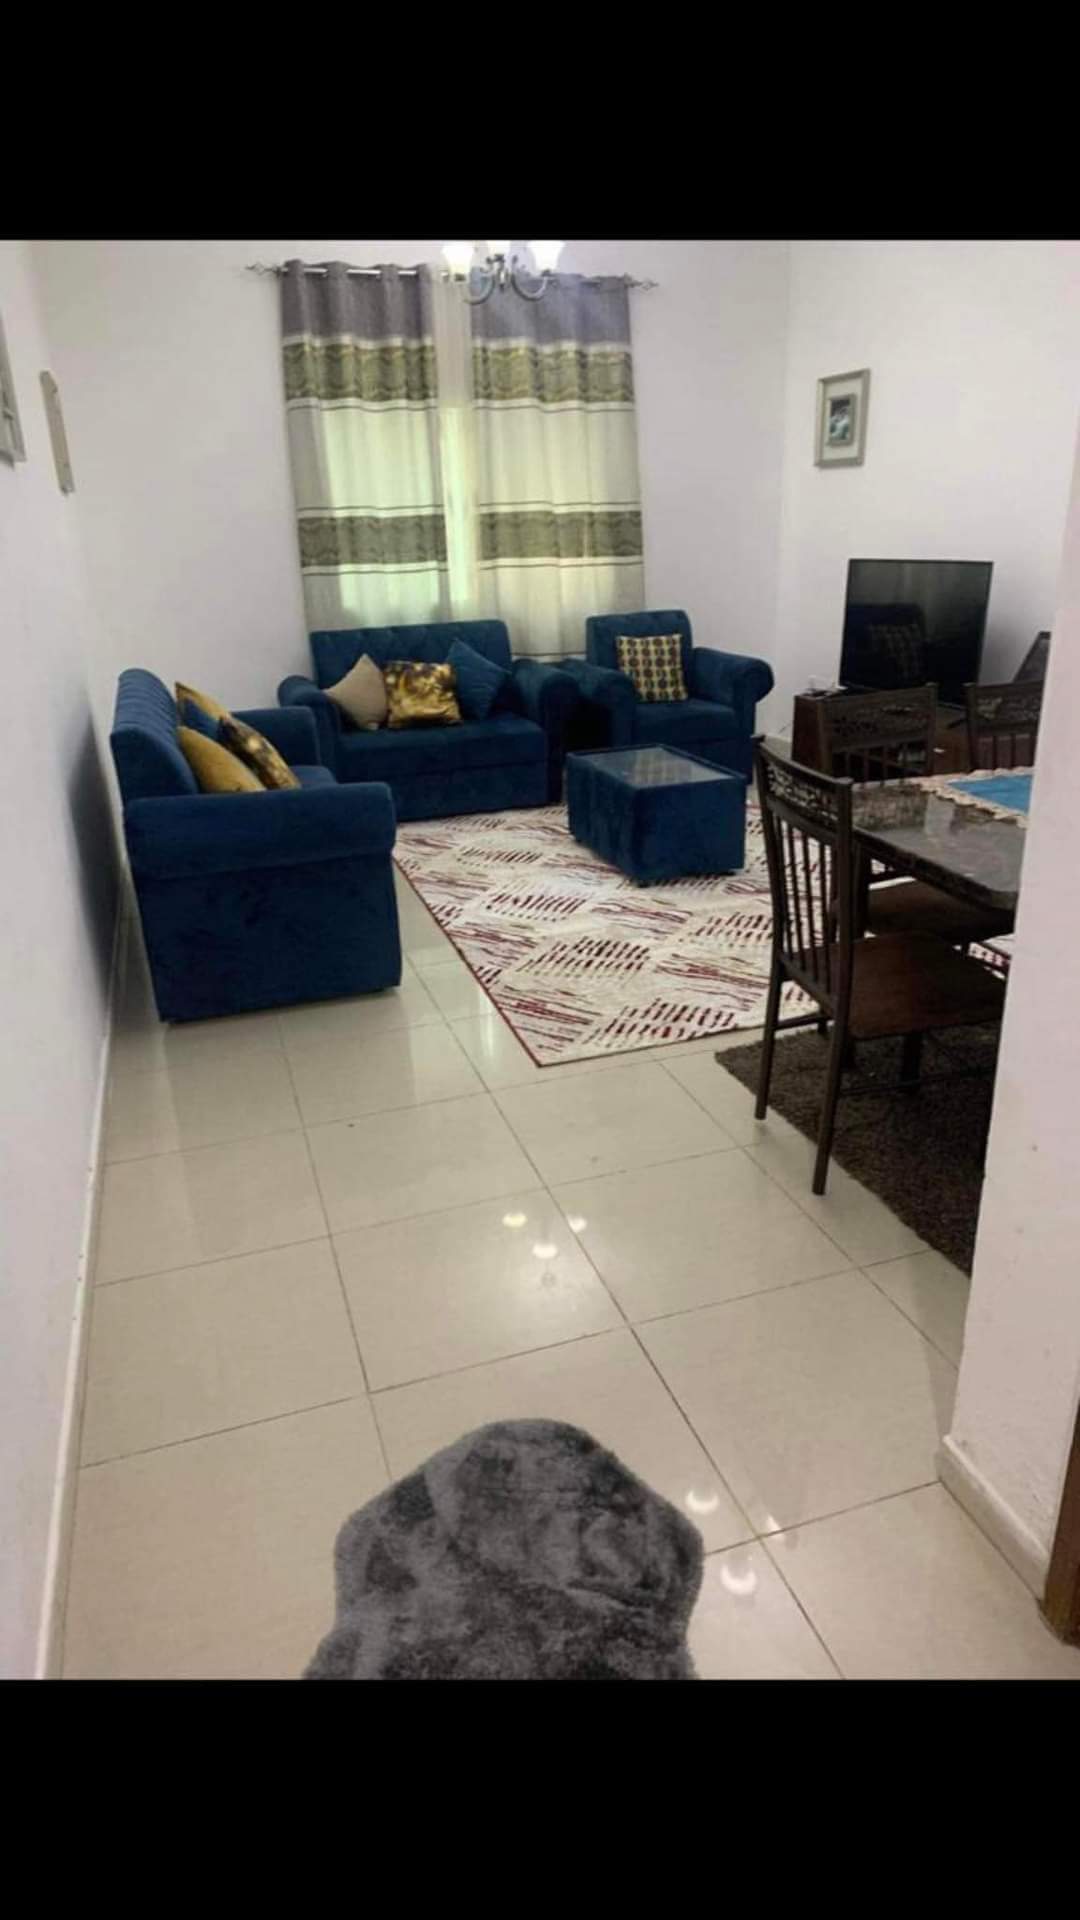 للإيجار غرفة وصالة مفروشة بالتعاون في الشارقة | Furnished room and lounge for rent in Sharjah